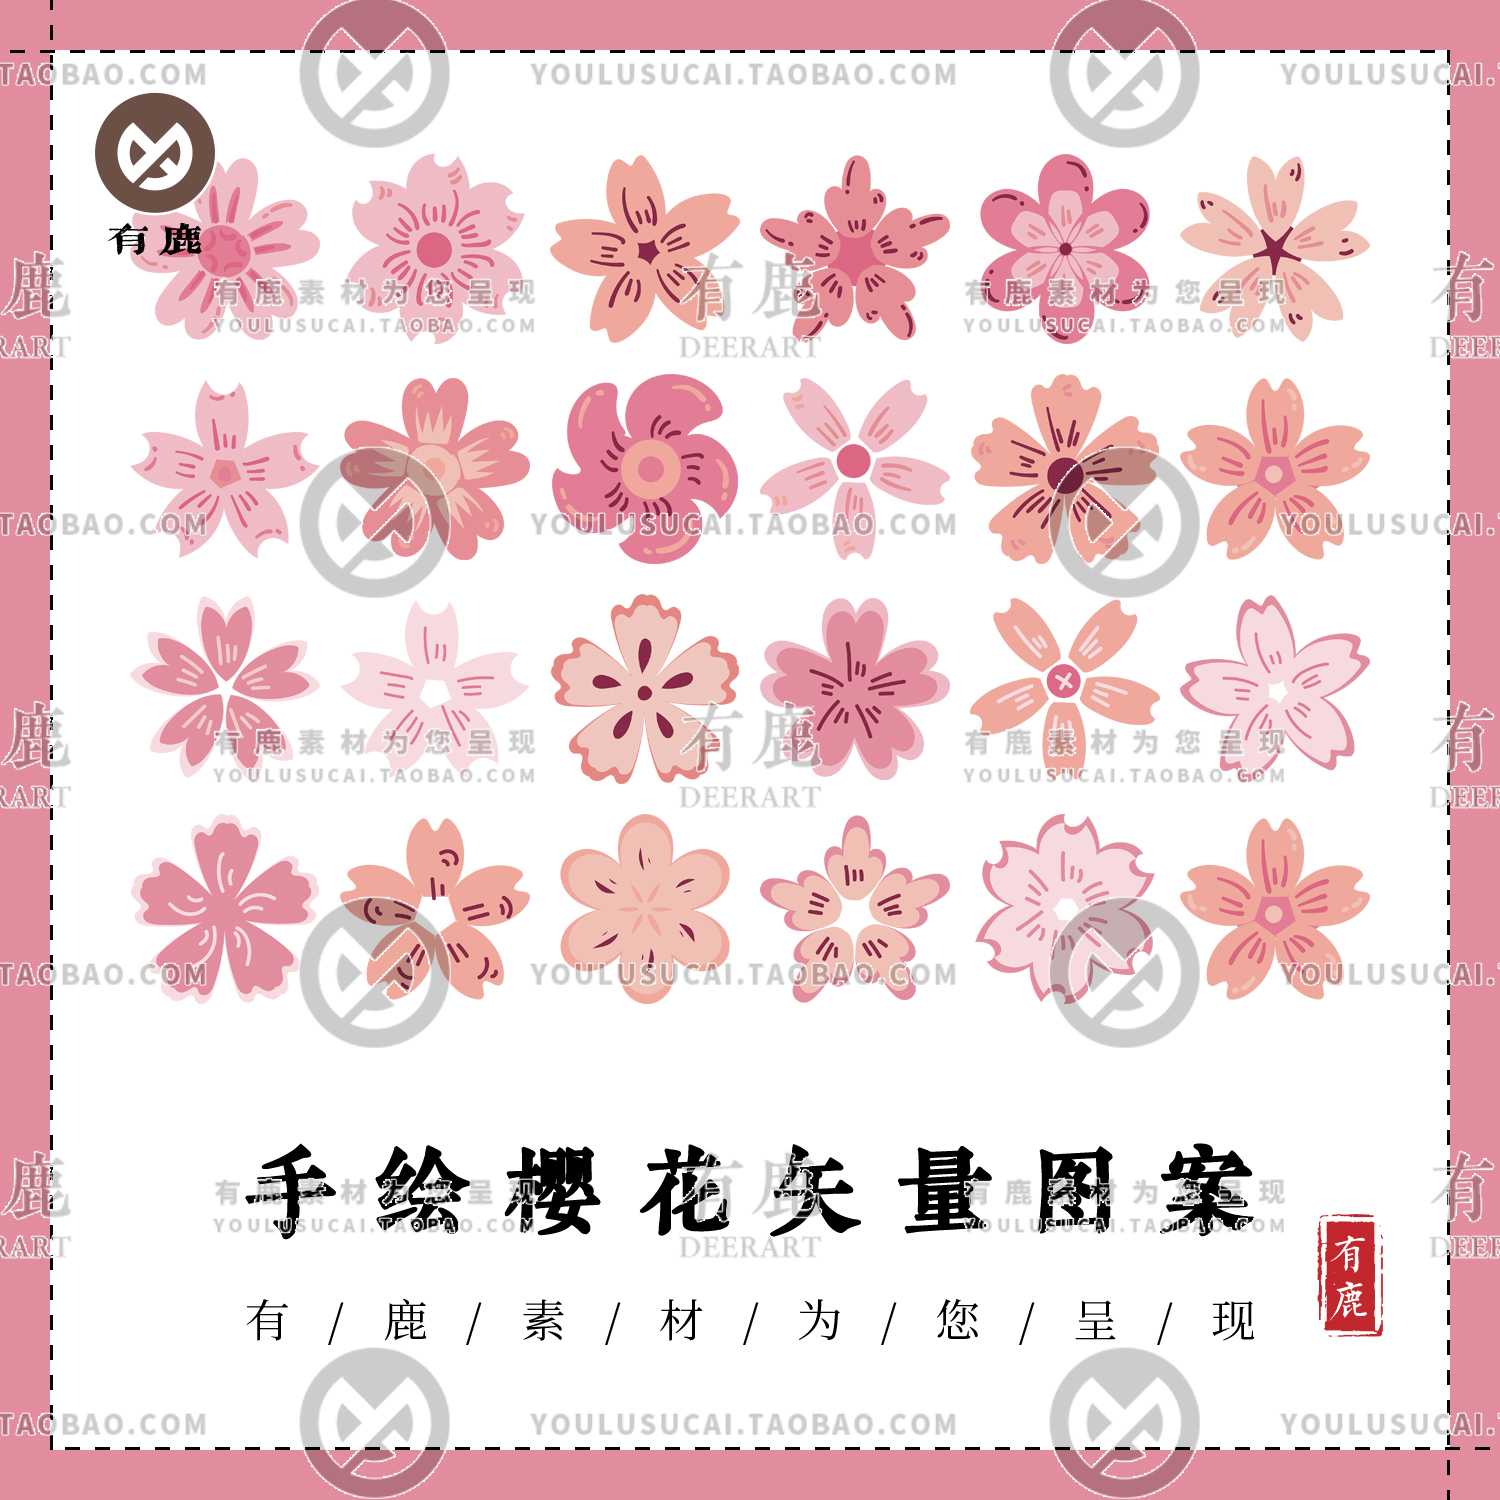 樱花桃花粉色花朵花卉扁平化花瓣手绘插画AI矢量素材PNG免扣图案